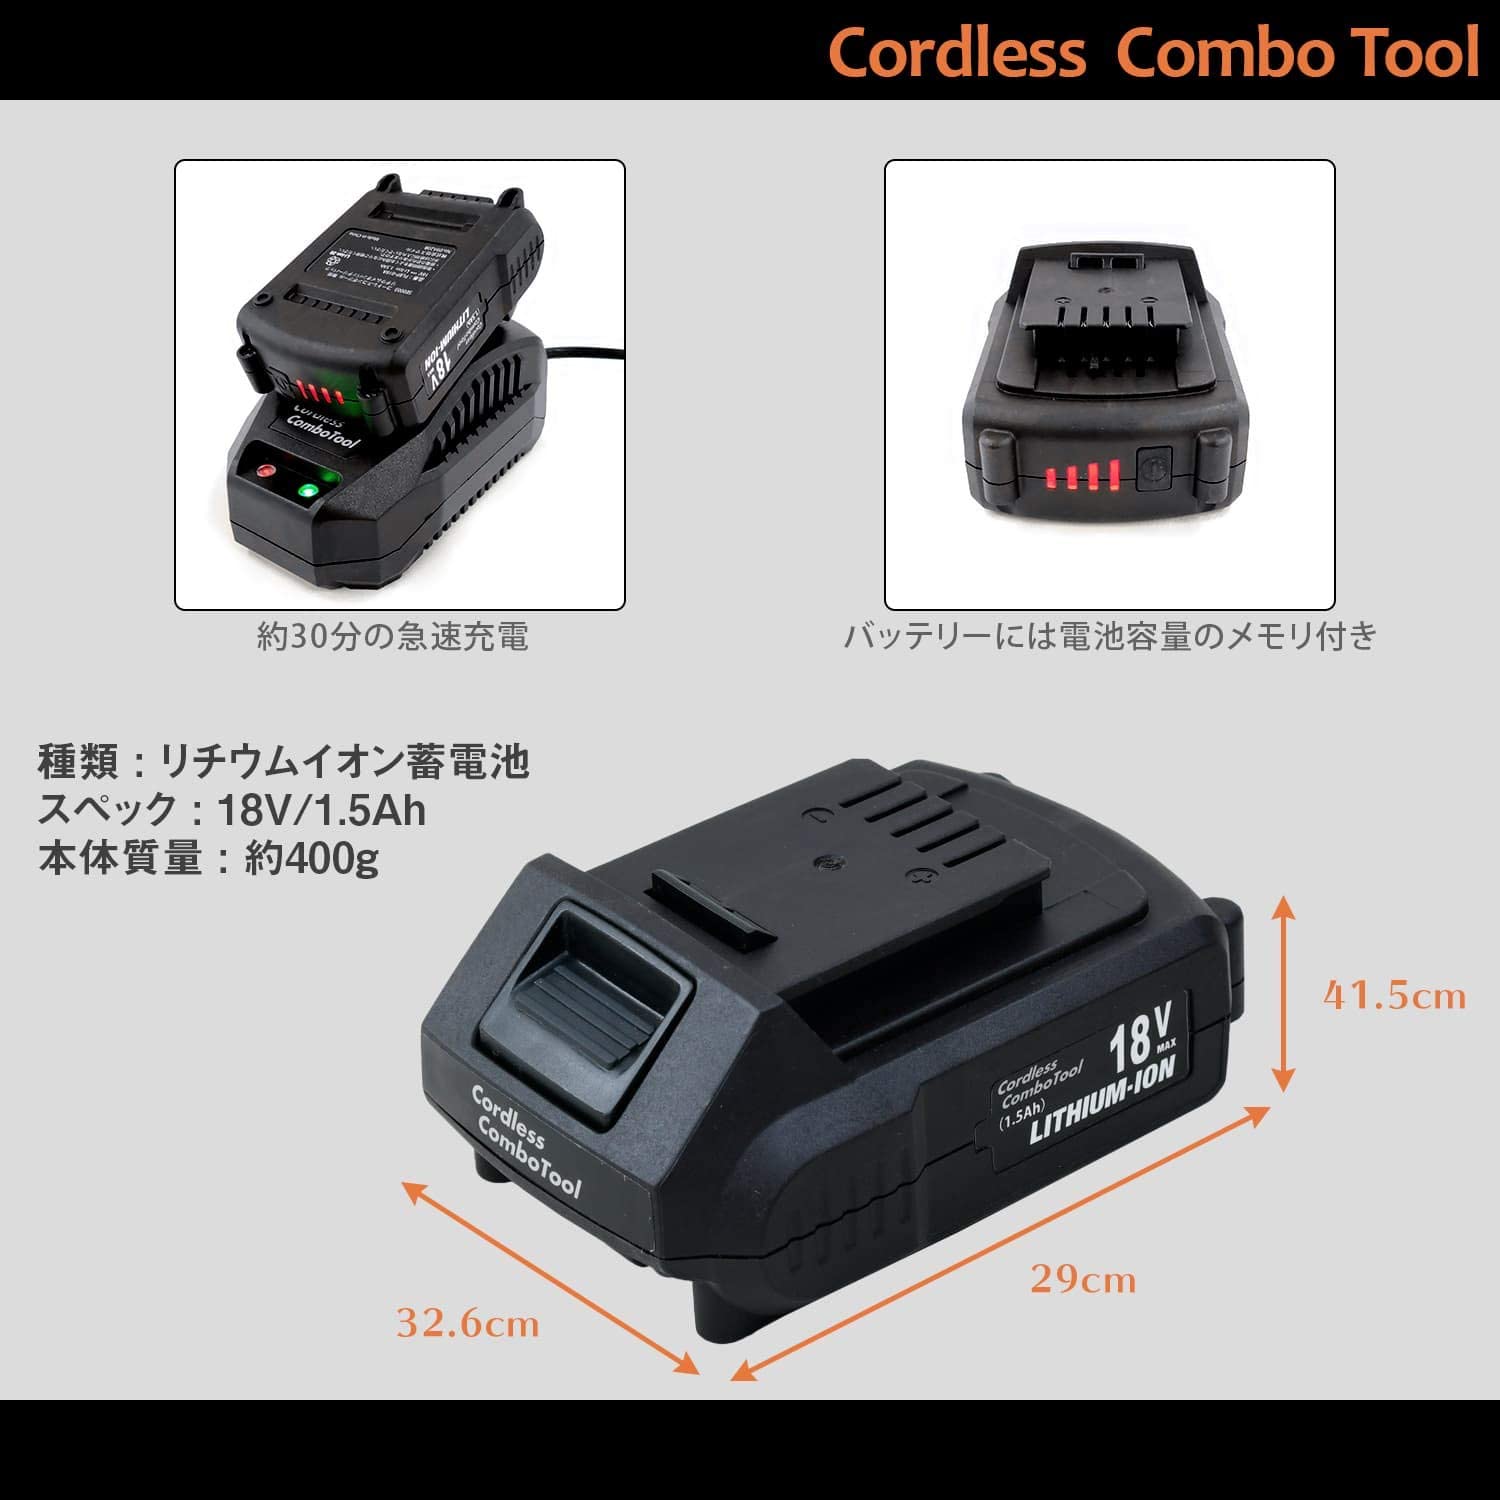 コードレスコンボツール ベーシック 18V電池パック (バッテリー2個) まとめ買いセット SE0003-02/PLBP-018A スマイル